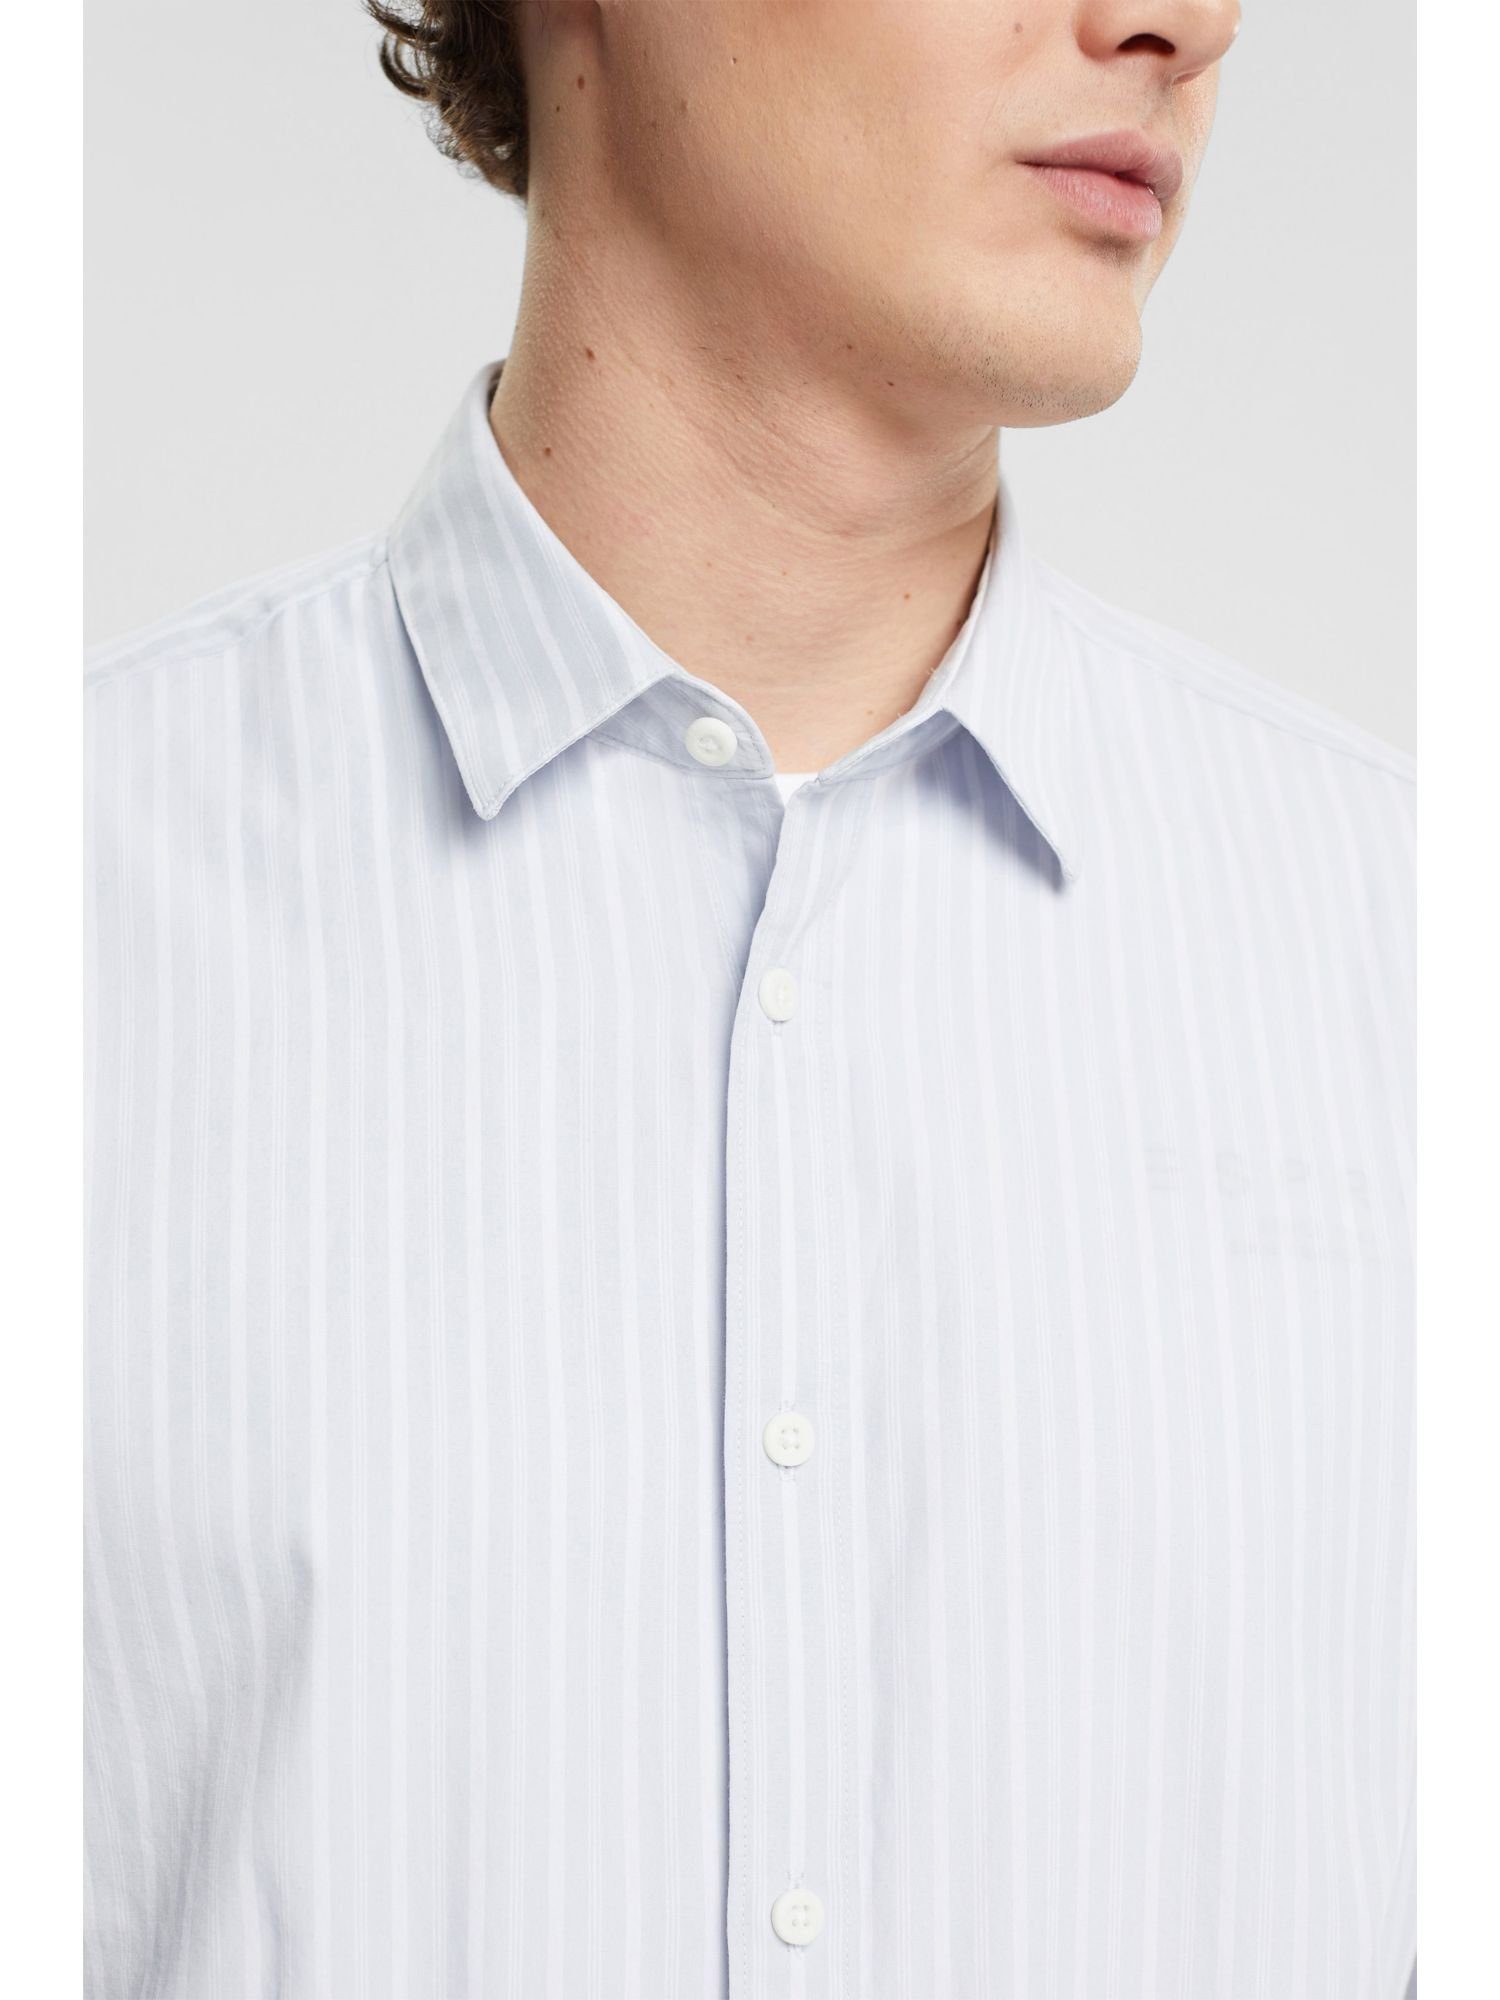 Esprit Collection Businesshemd Streifen BLUE mit LIGHT Hemd